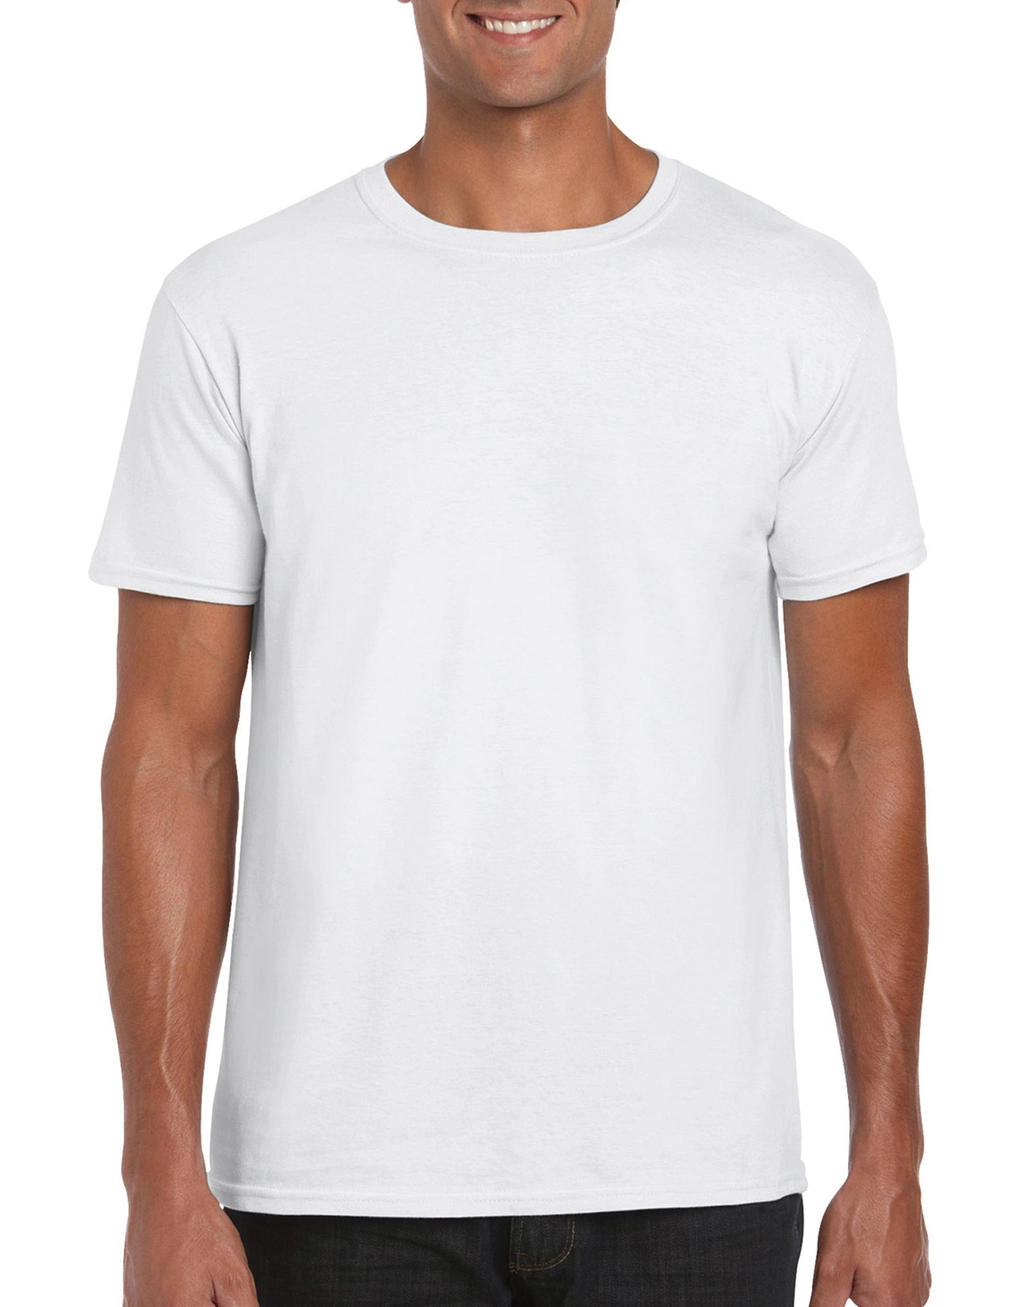 Softstyle® Ring Spun T-Shirt zum Besticken und Bedrucken in der Farbe White mit Ihren Logo, Schriftzug oder Motiv.